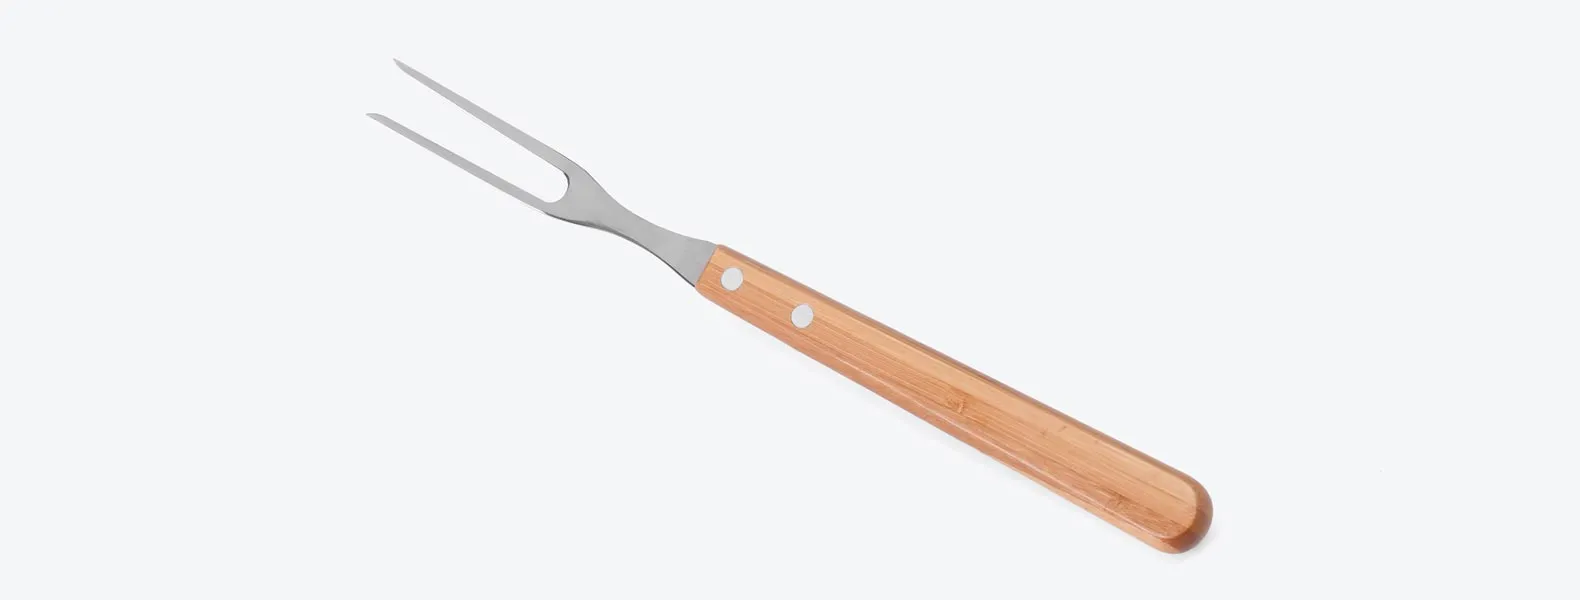 Conjunto de Facas em Bambu/Aço Inox; Acompanha faca 7'', faca 3 para legumes e garfo em Bambu/Inox. Como cortesia, na faca 7 fazemos uma gravação com os cortes do boi.